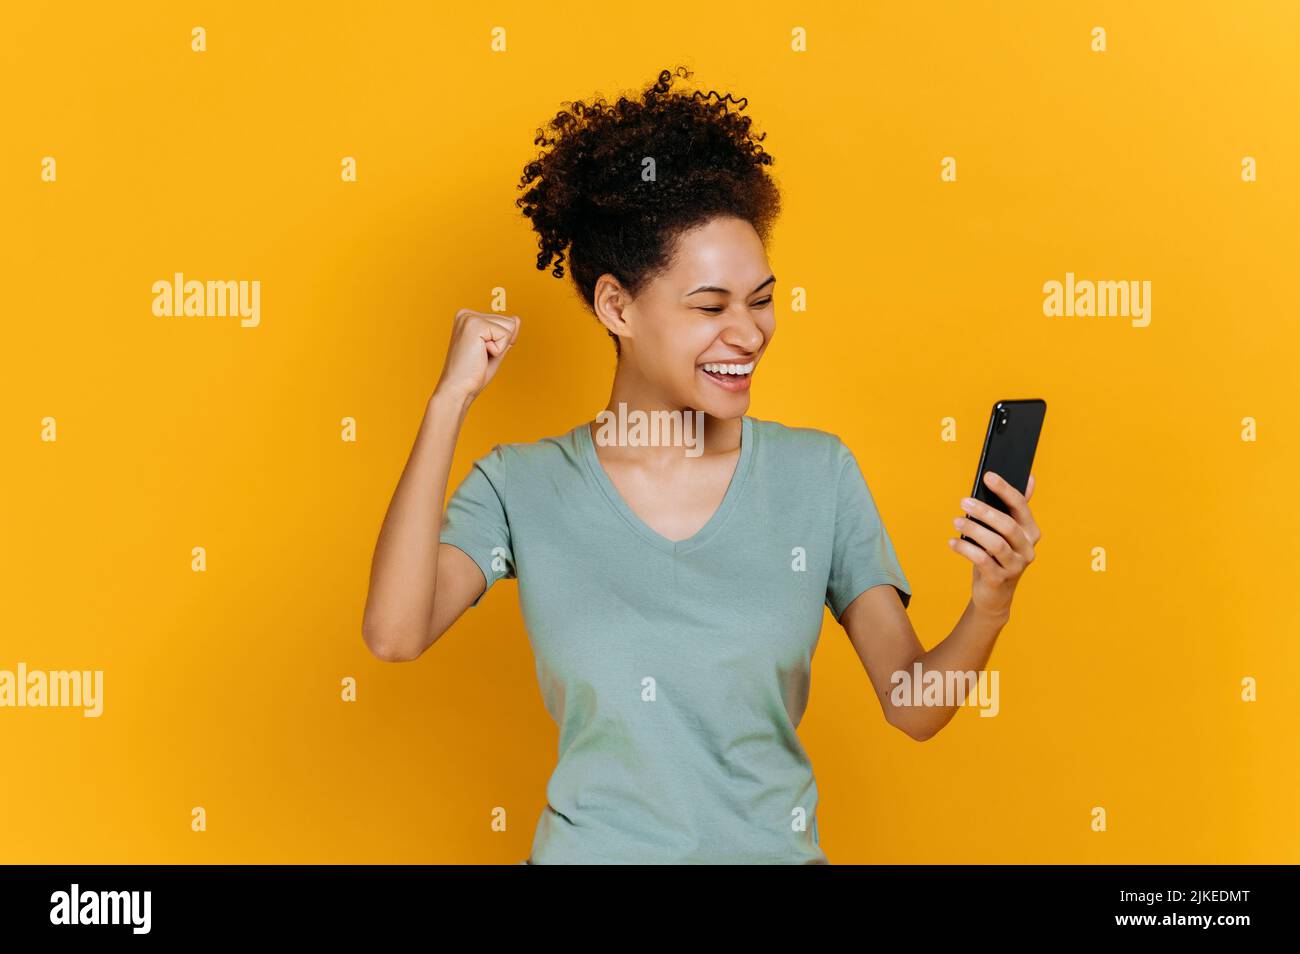 Erstaunt fröhlich aufgeregt afroamerikanischen Mädchen hält Smartphone, unerwartete Nachrichten, Lotterie gewinnen, steht auf isolierten orangen Hintergrund, fröhlichen Gesichtsausdruck, toothy Lächeln, gestikulieren mit Faust Stockfoto